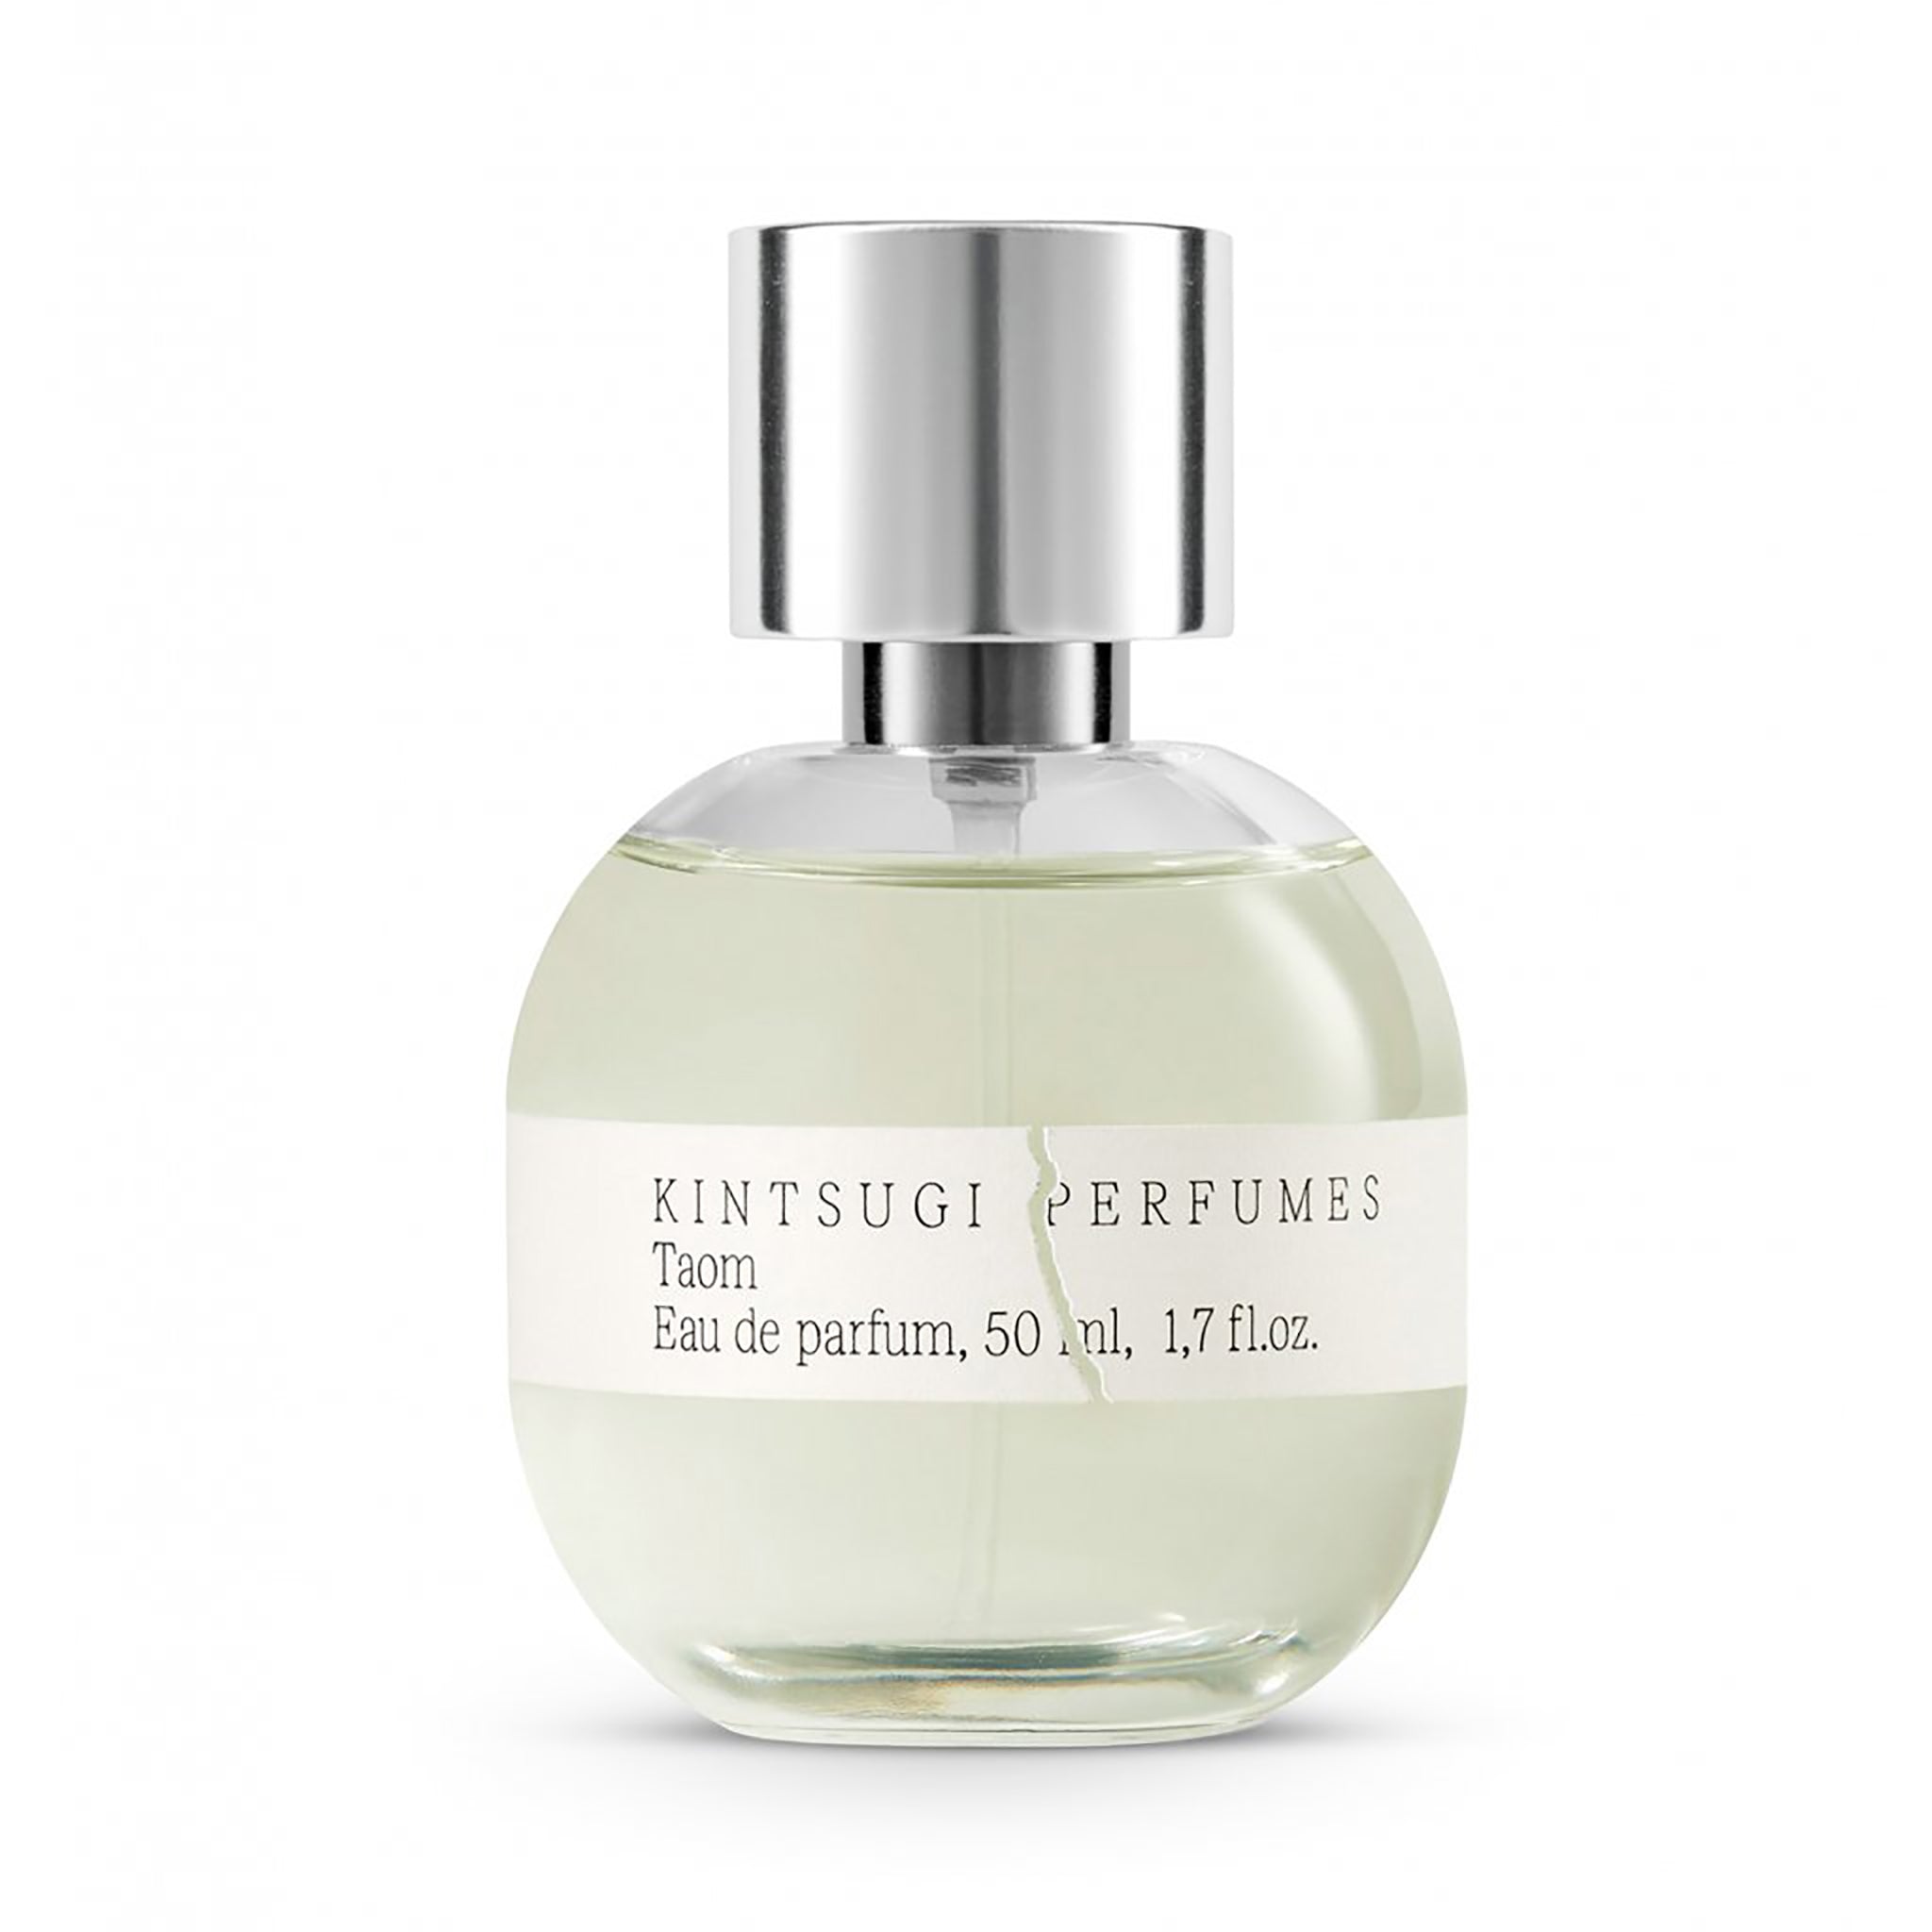 KINTSUGI PERFUMES / TAOM Eau de Parfum 50 ml, 1,7 fl.oz – TTAGGG